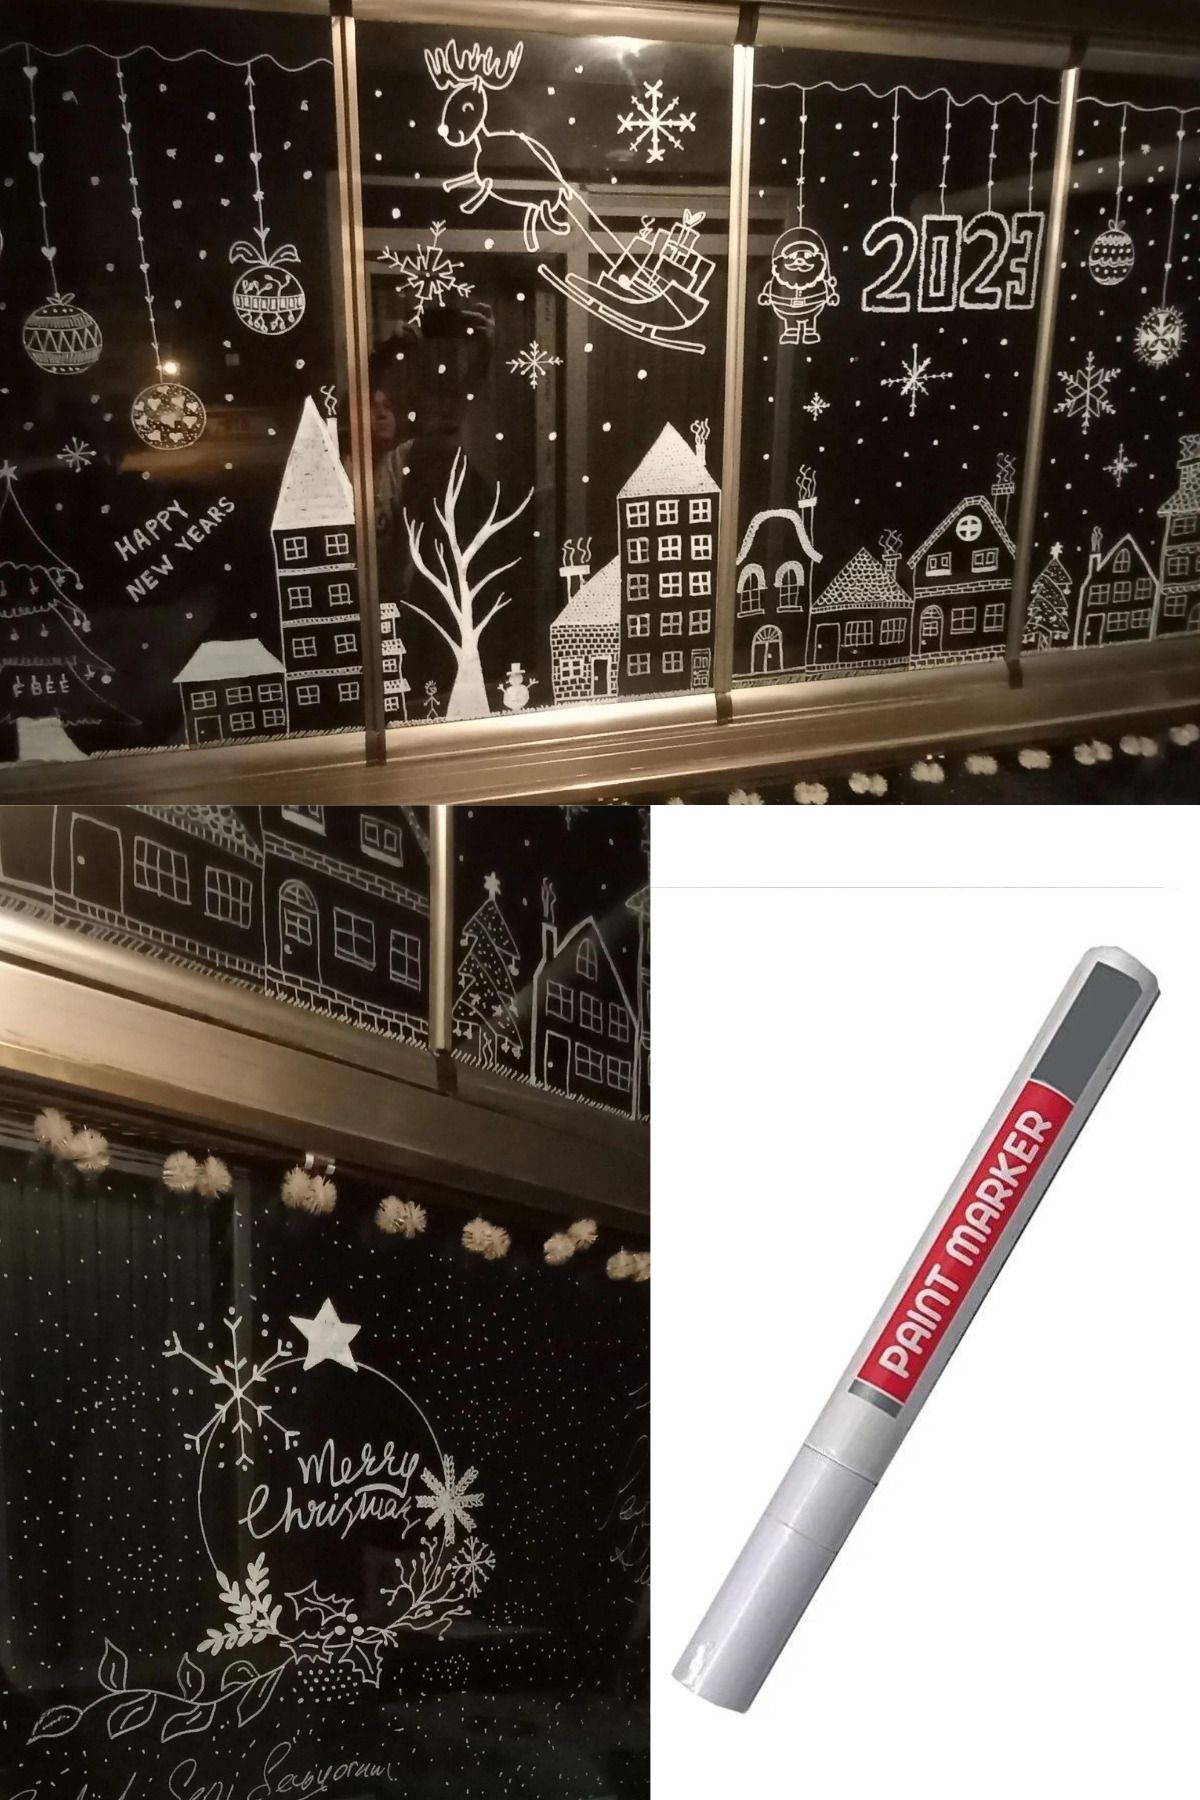 Dekals Yılbaşı Cam Süsleme Kalemi Silinebilir Çok Amaçlı Dekorasyon Kalem (Kullanım Talimatıyla)